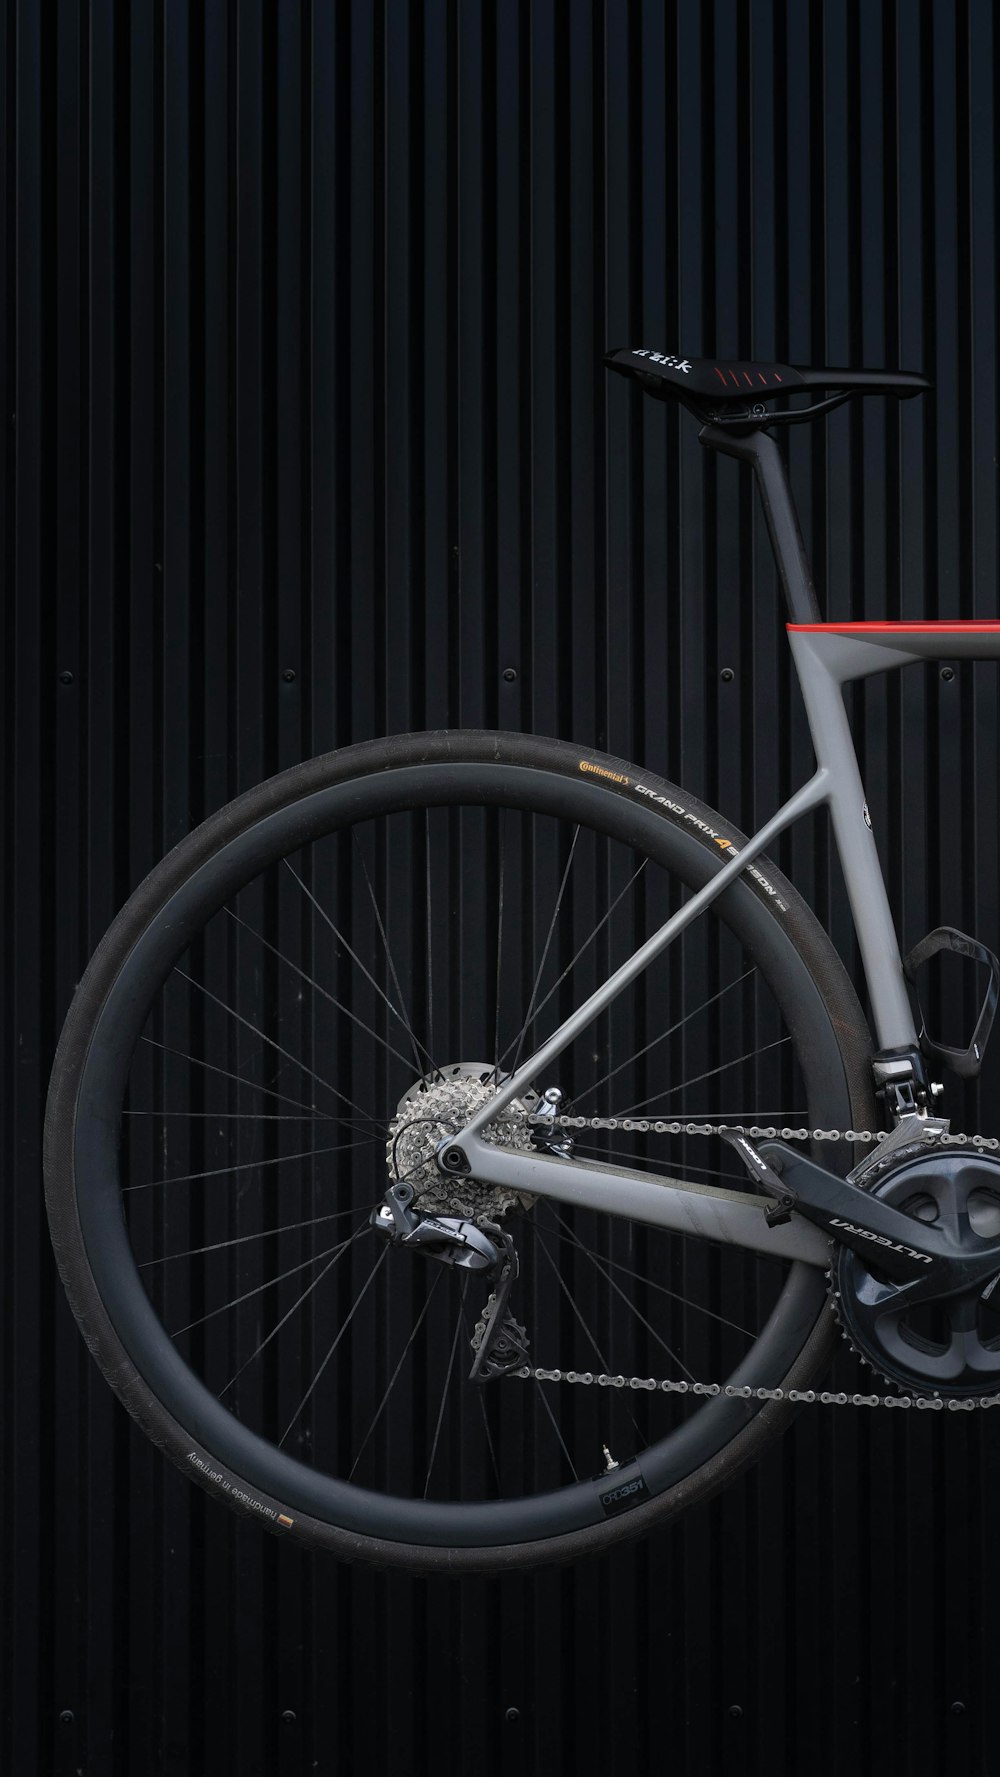 ruota di bicicletta in bianco e nero appoggiata alla parete di legno nera